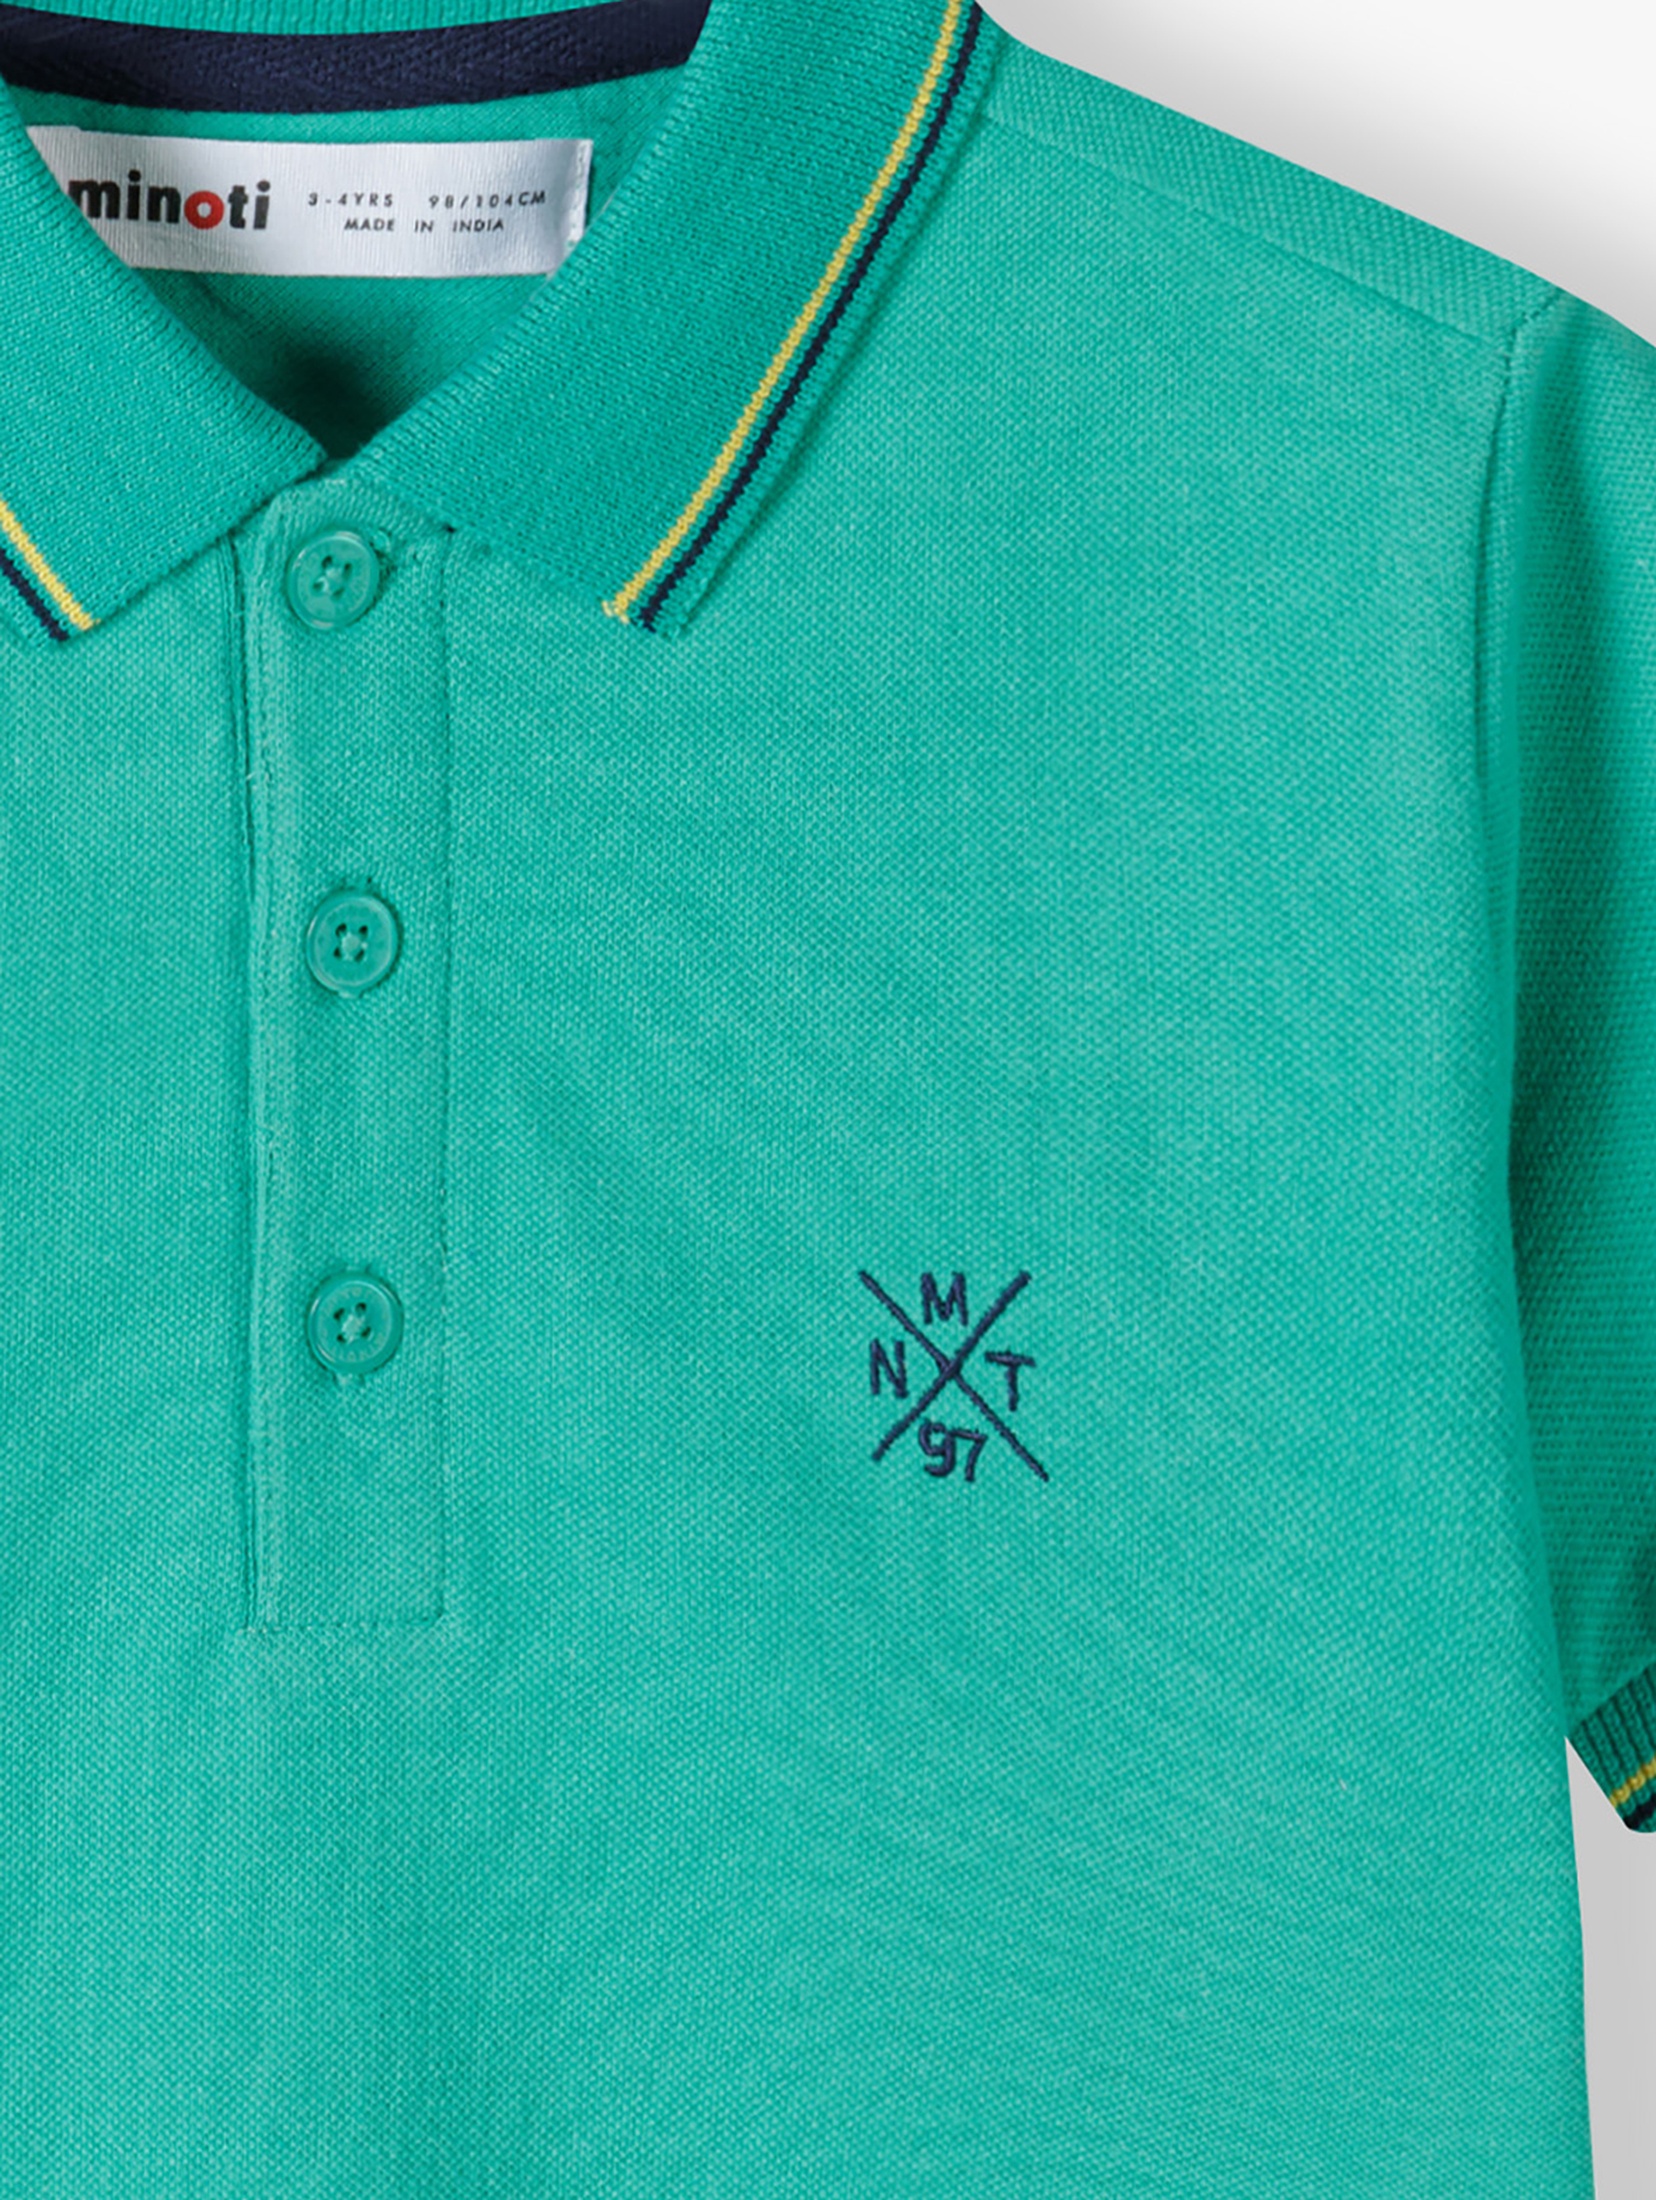 Bluzka polo dla chłopca z krótkim rękawem- zielona